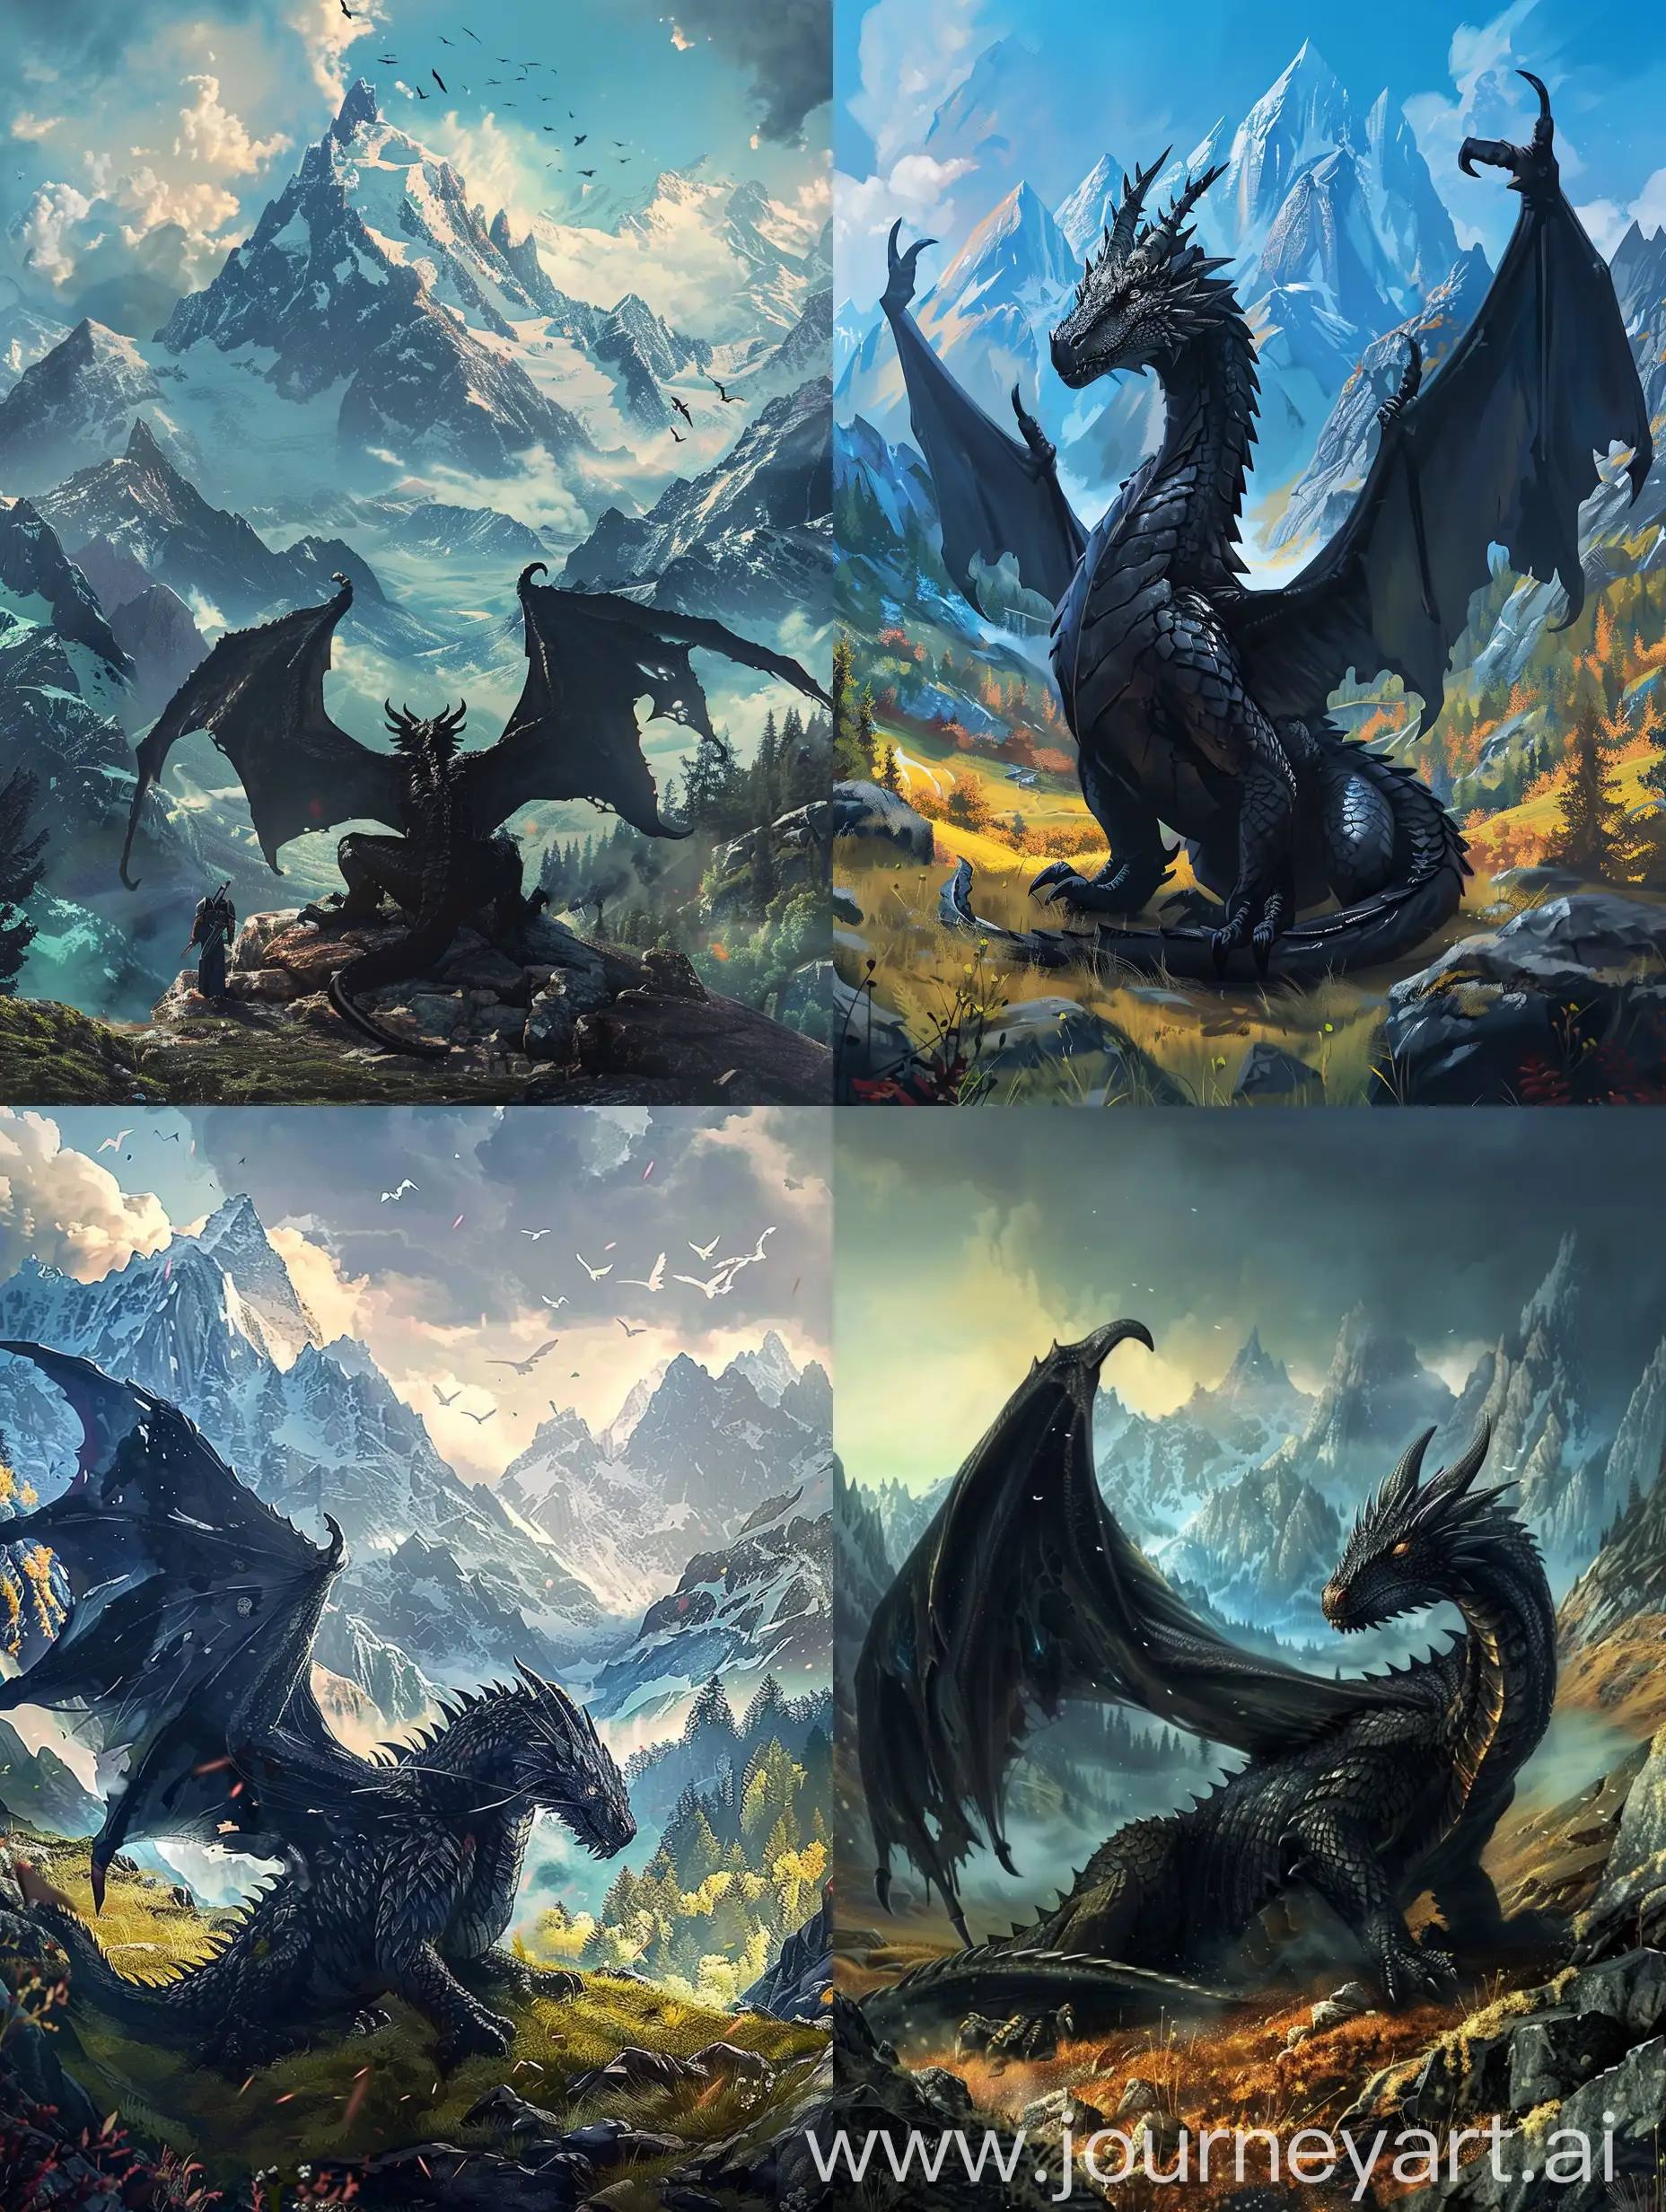 Плакат к игре в жанре фэнтези с черным драконом и горами на фоне